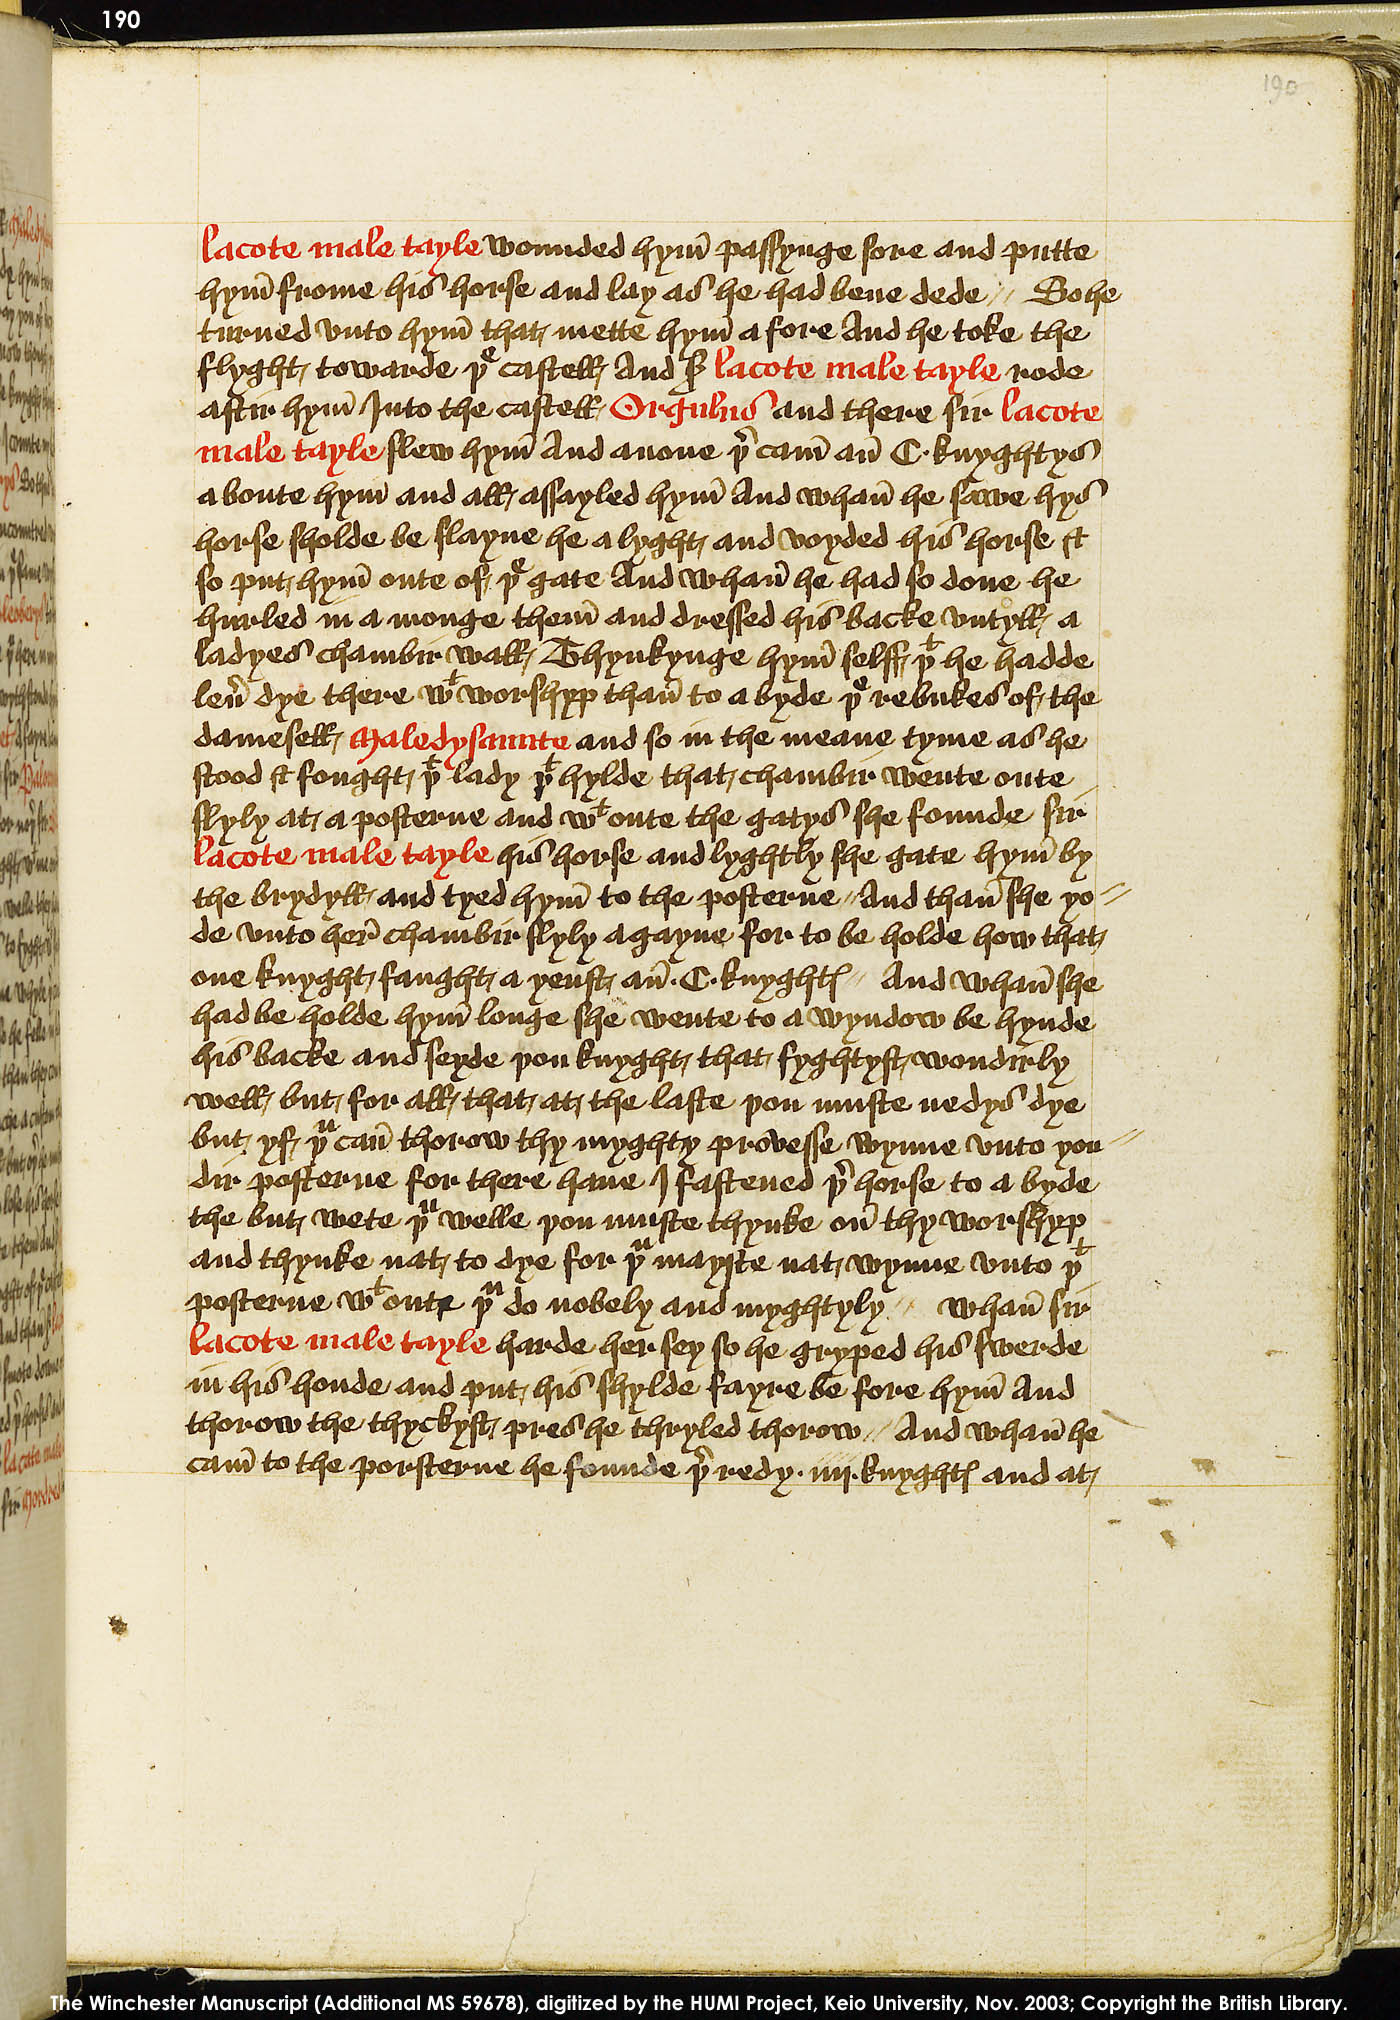 Folio 190r